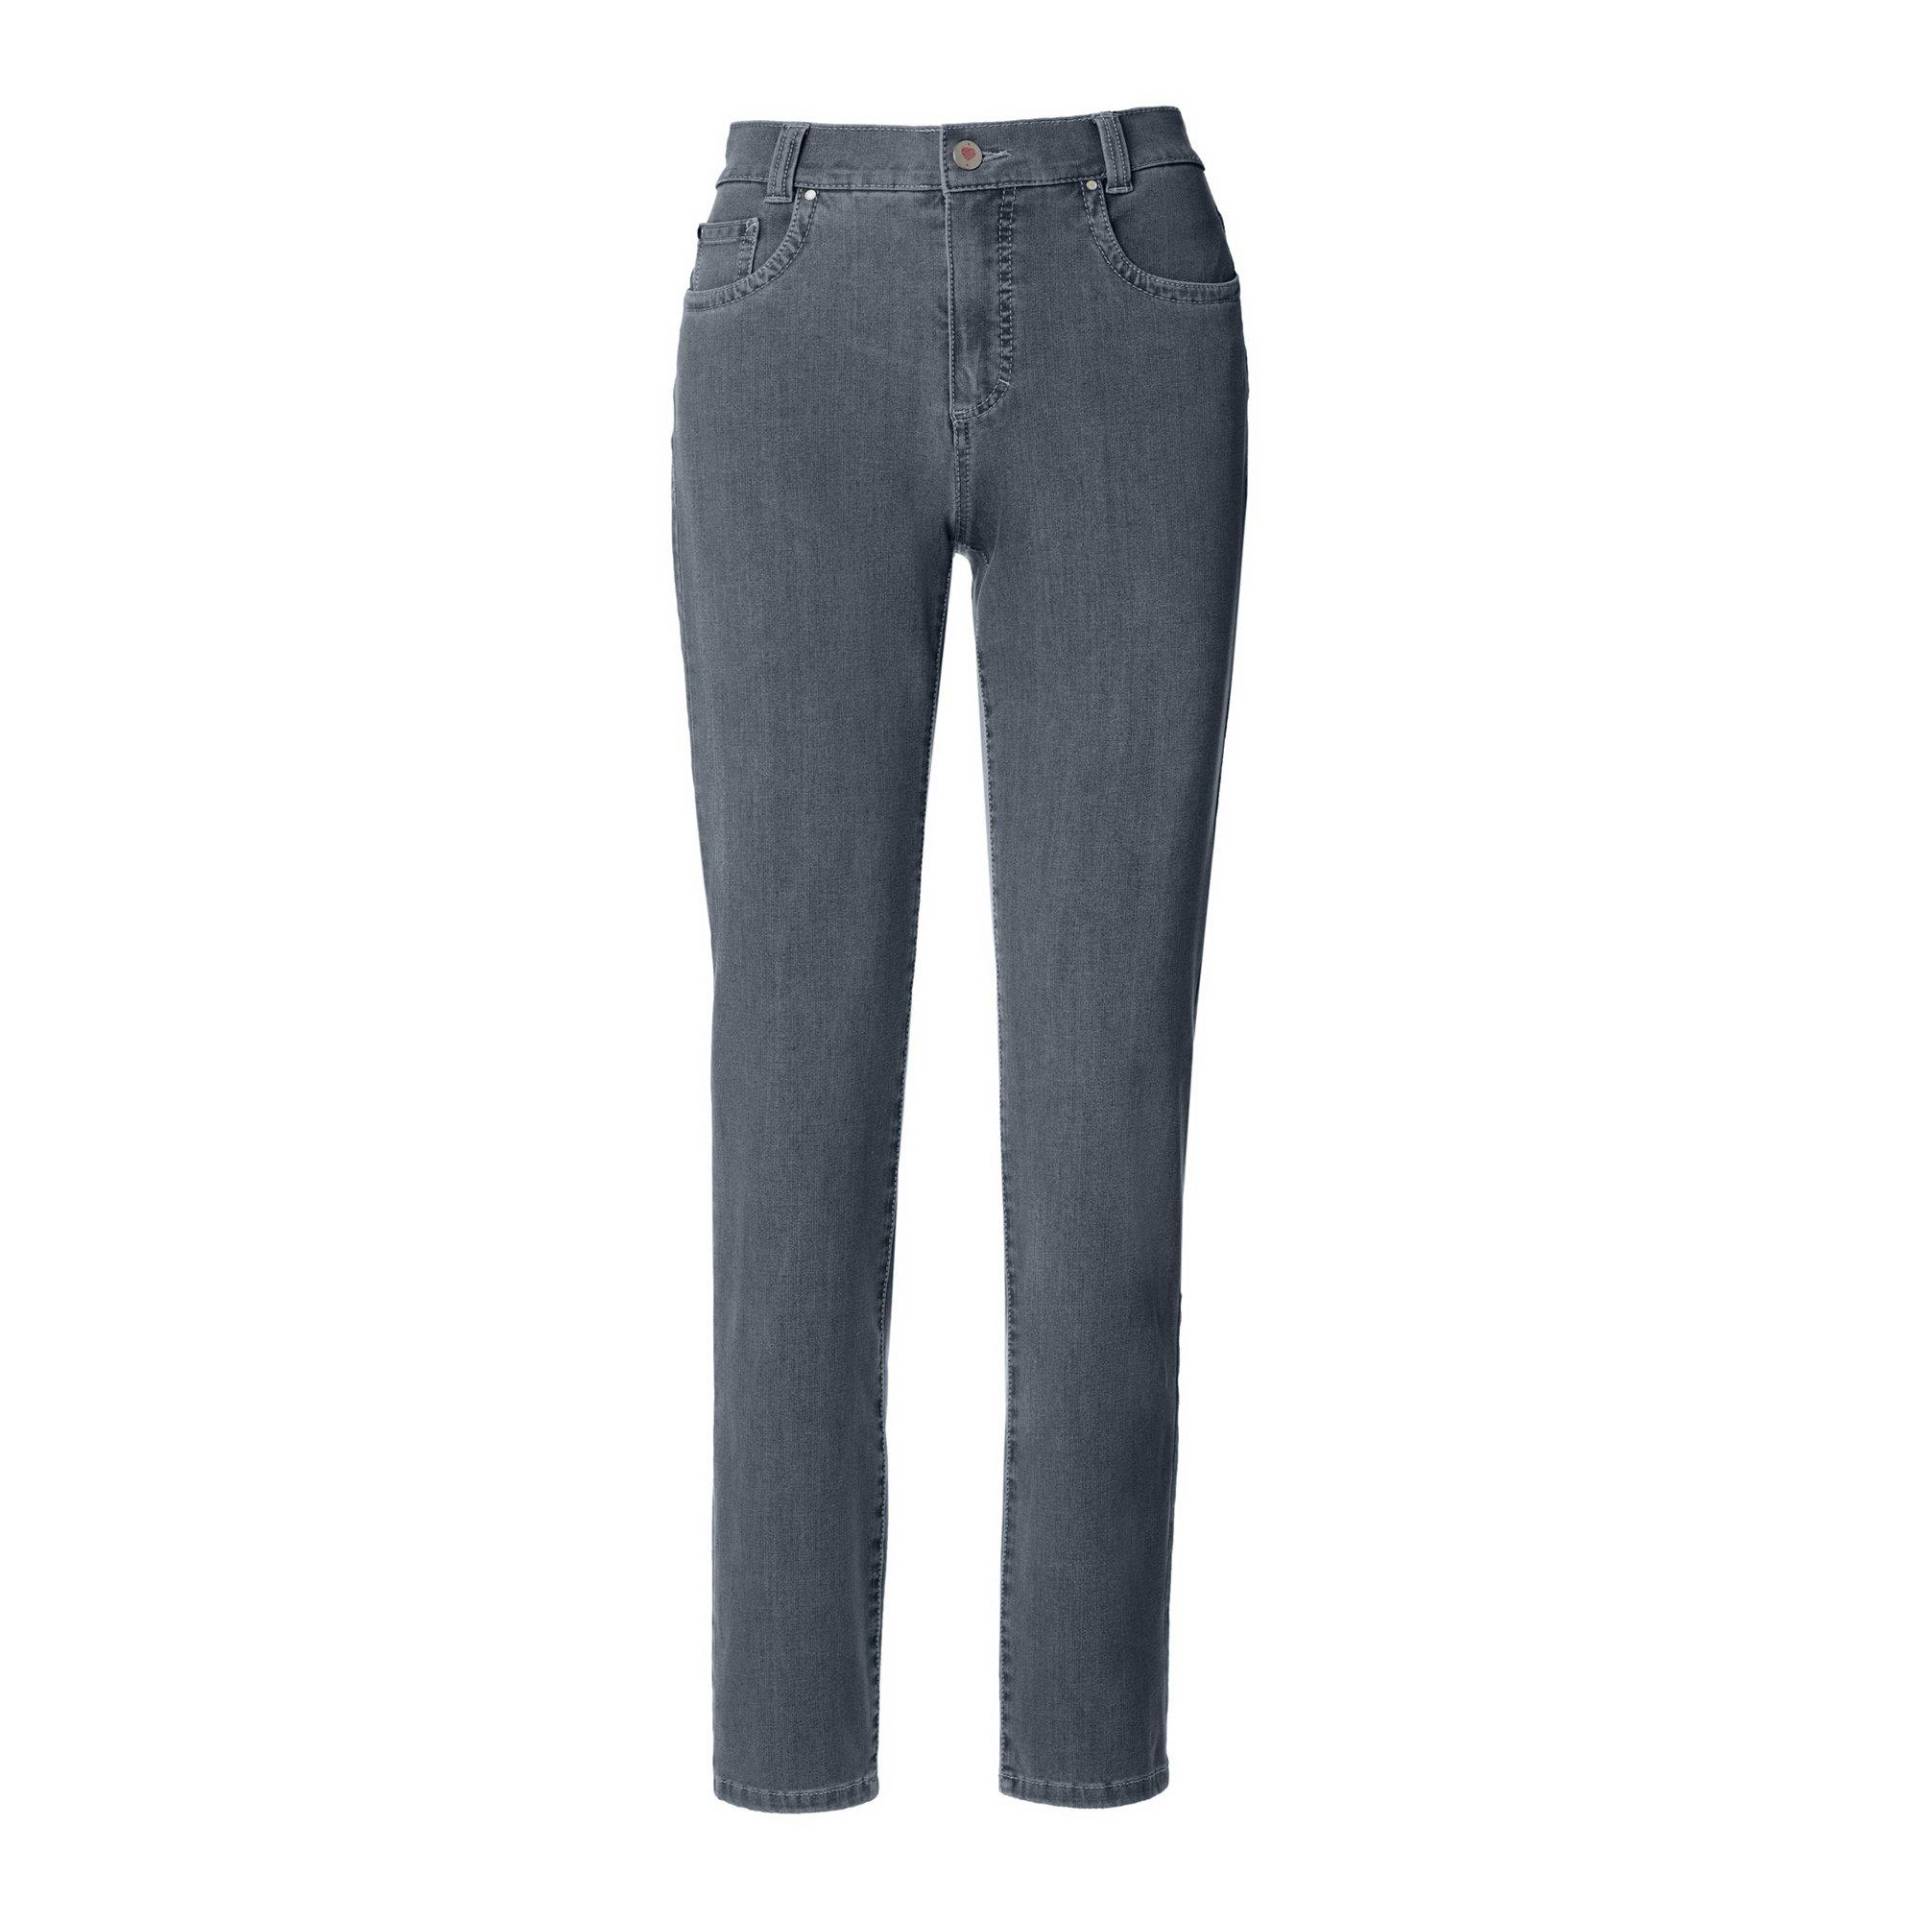 Jeans, Slim Fit Damen Blau Denim Dunkel W42 von ANNA MONTANA